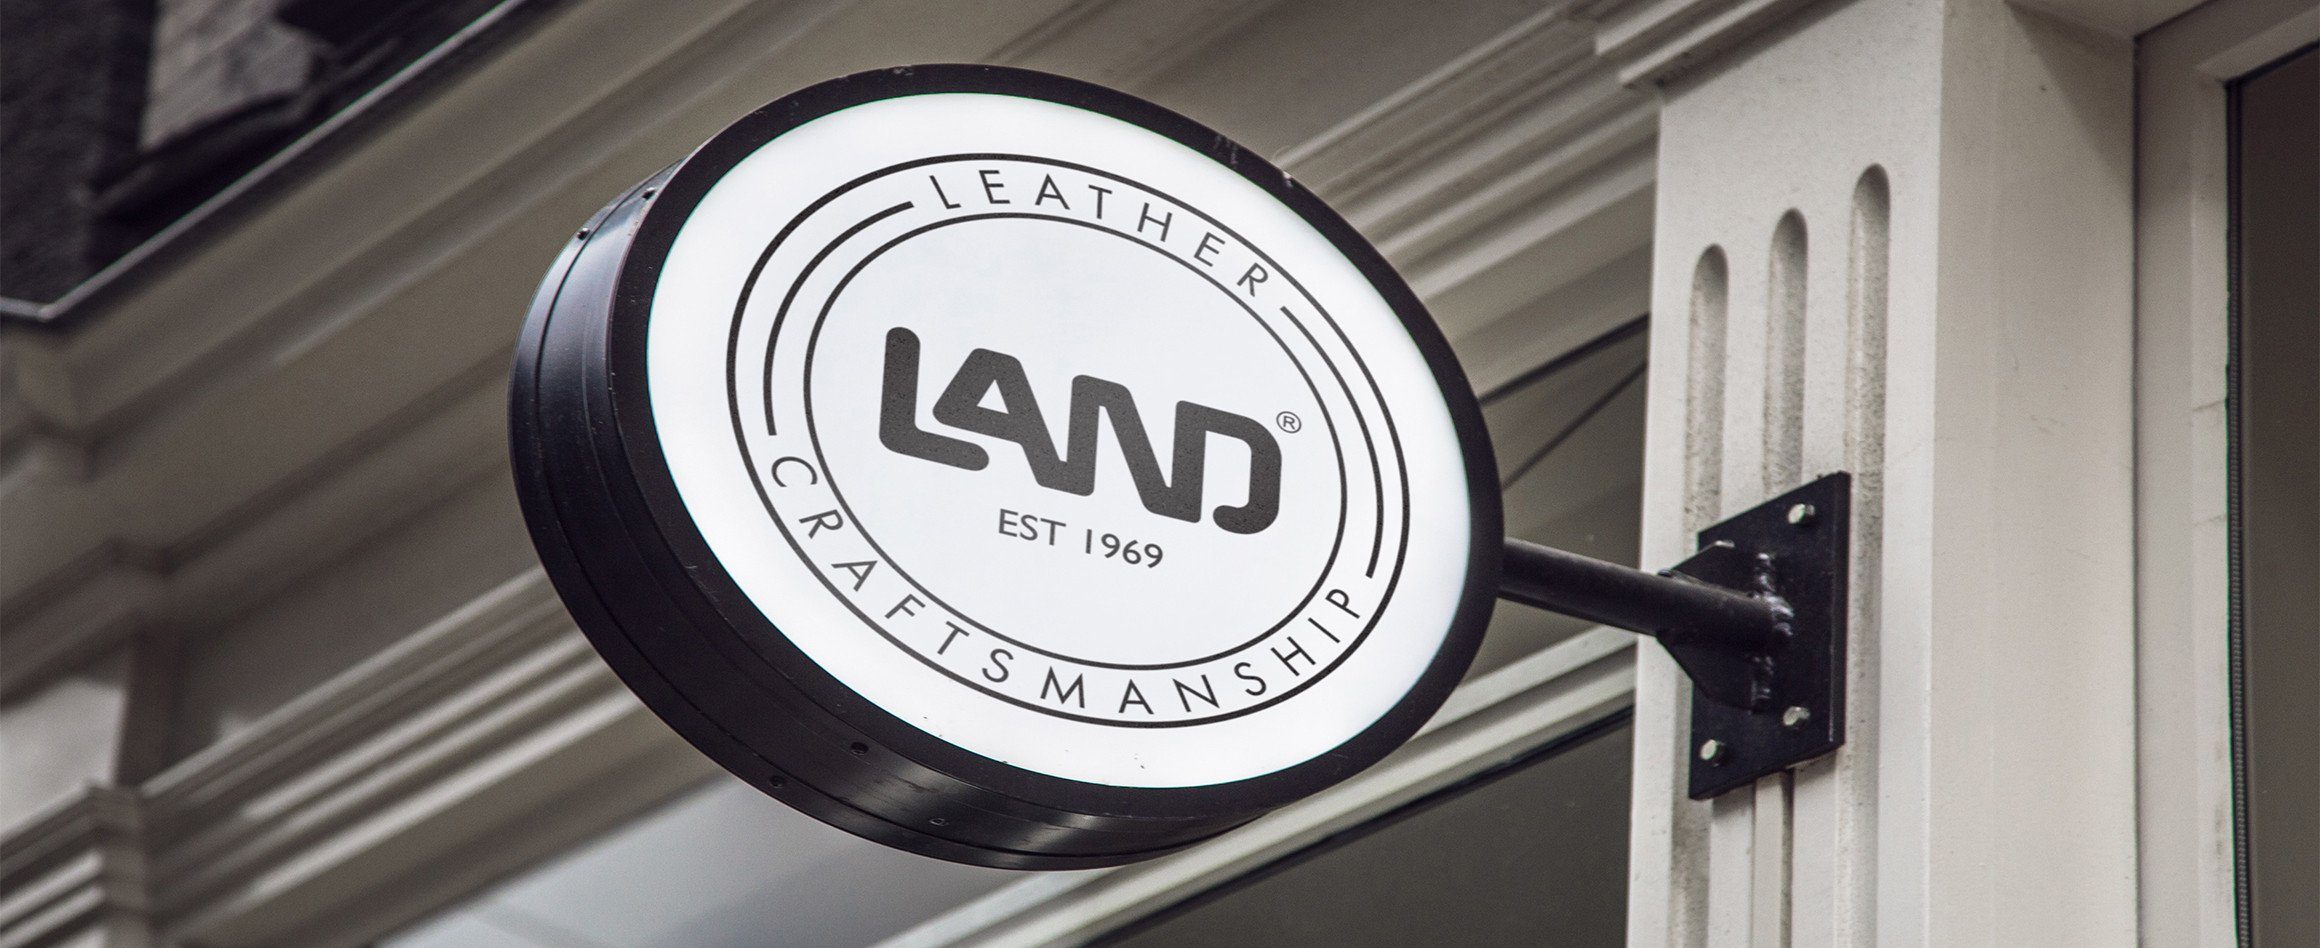 New LAND Store Opening - Guyana